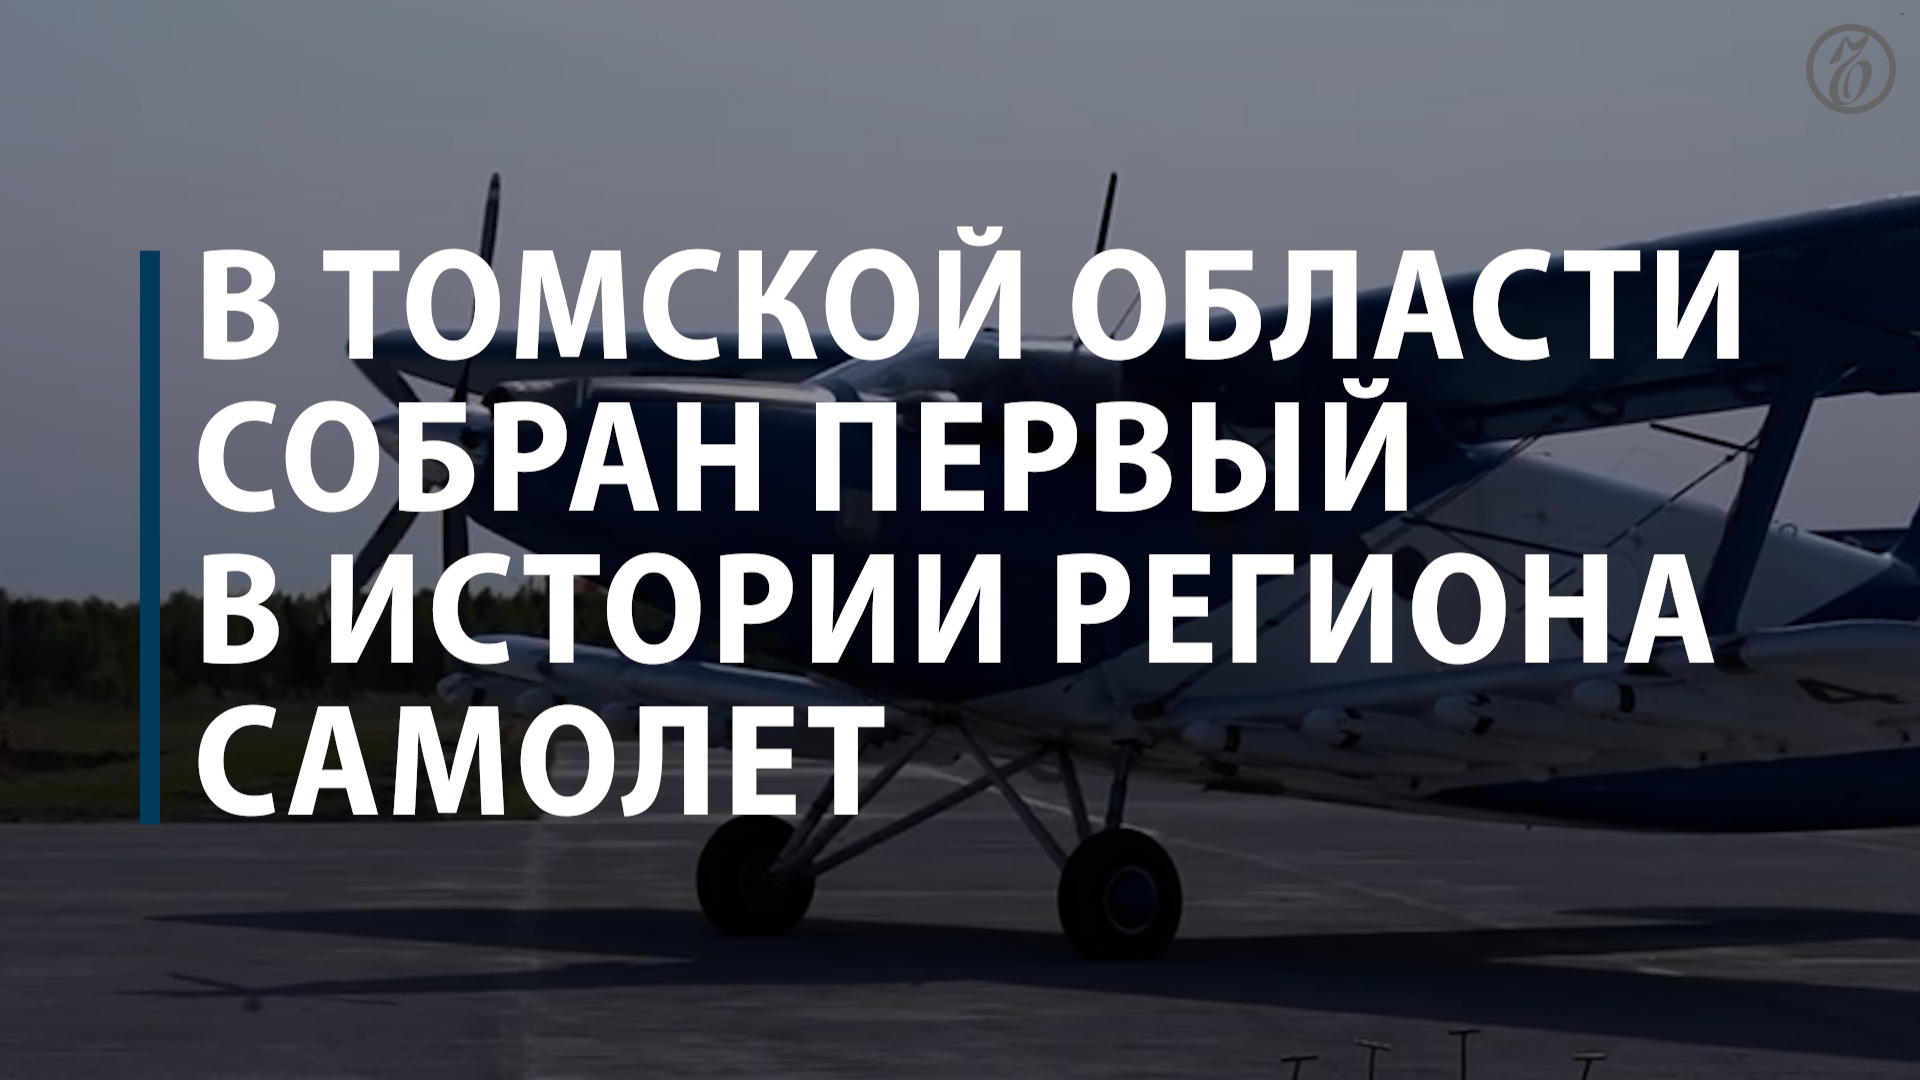 В Томской области собран первый в истории региона самолет